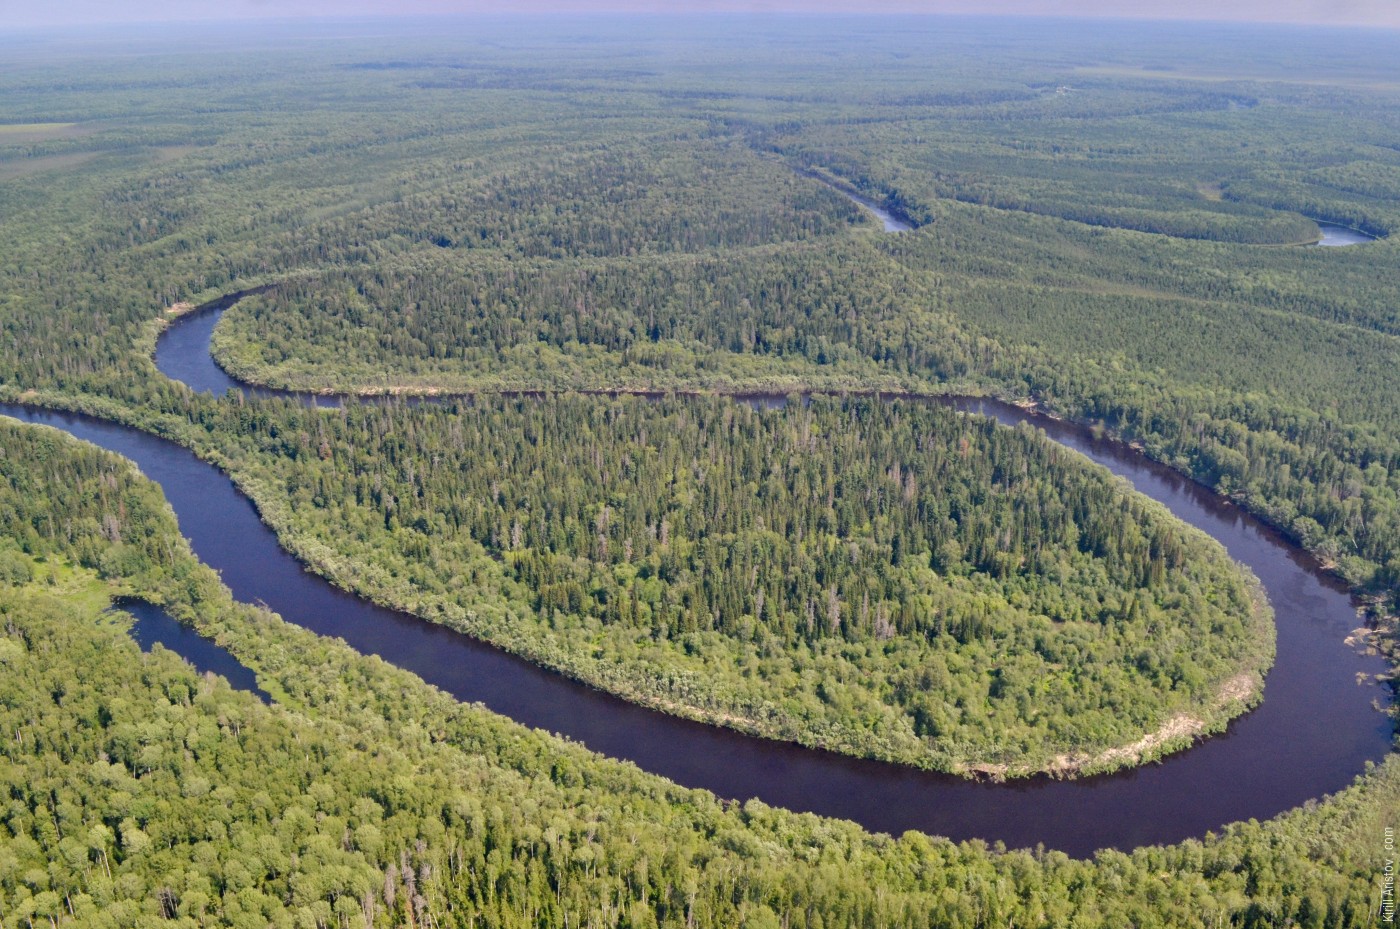 Река Демьянка, Location: Река Демьянка. Уватский район, Тюменская область, Россия.